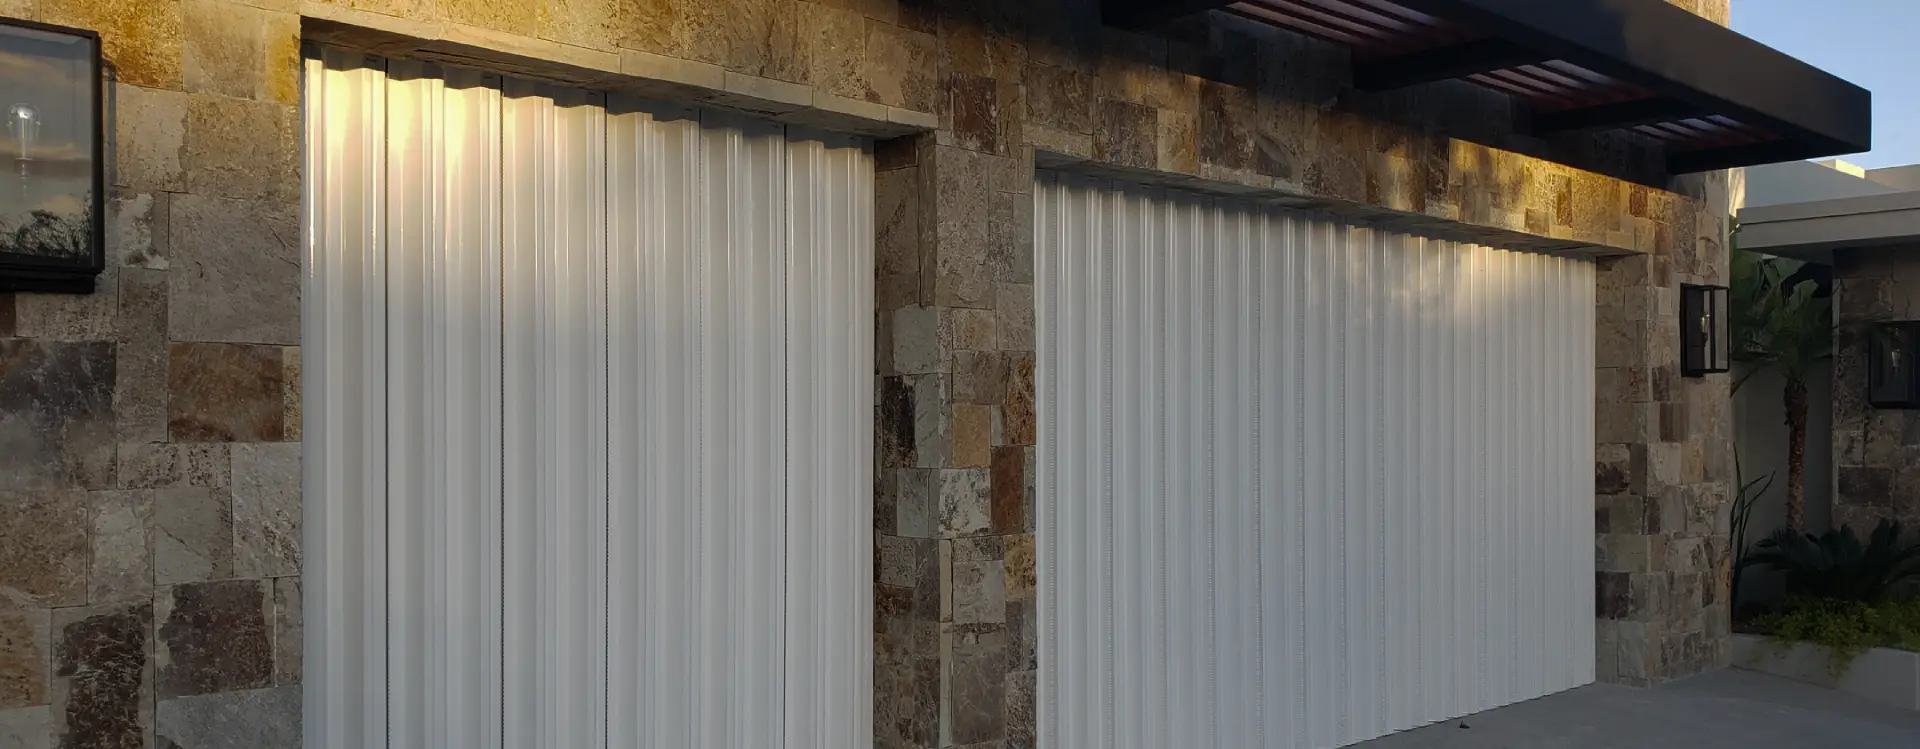 Productos Stormpanel protección contra huracanes de ventanas, paneles y persianas de aluminio. Los Cabos BCS